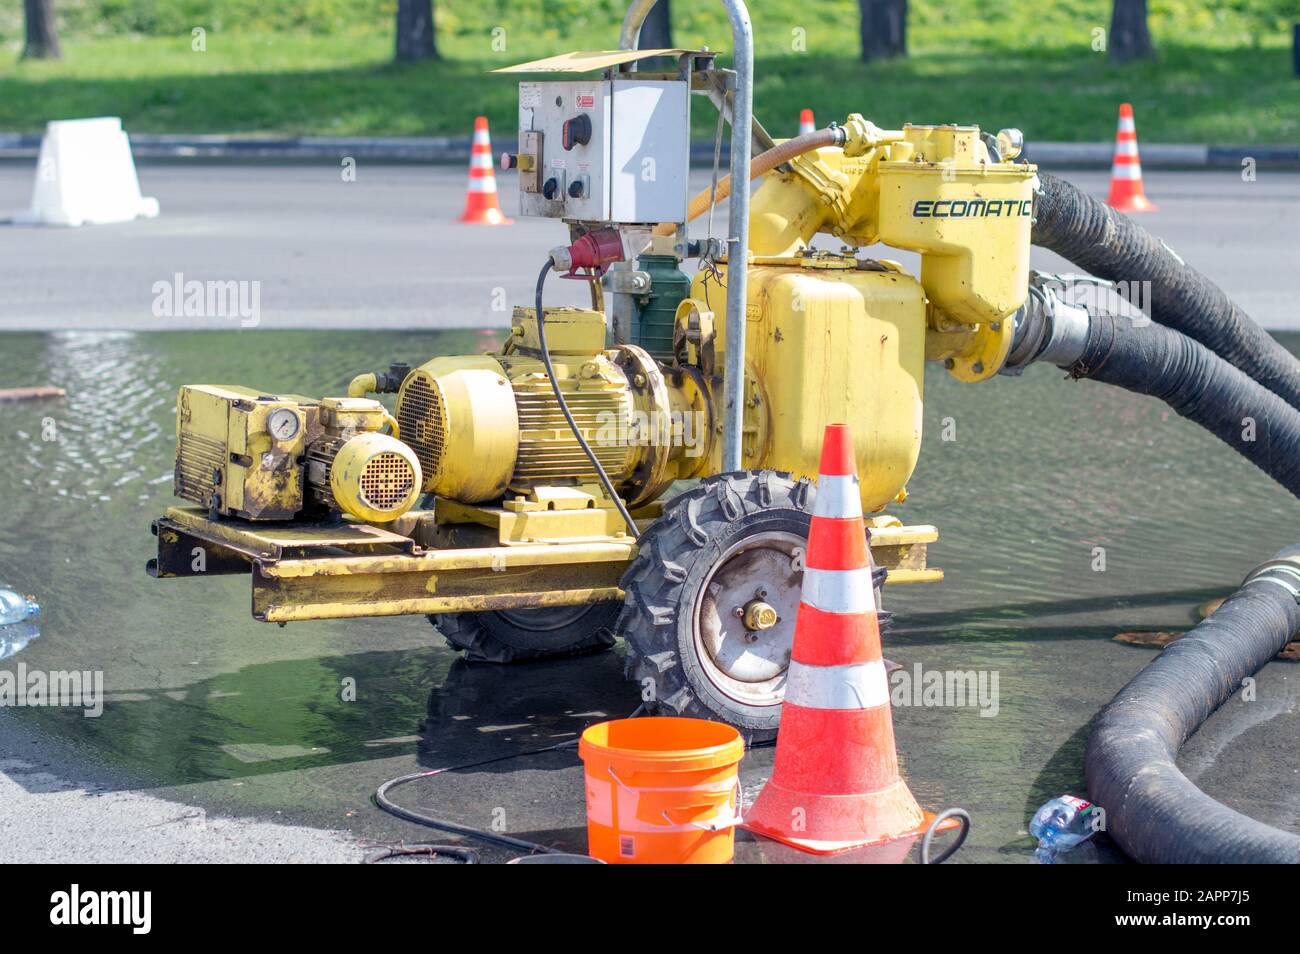 Große Ekomatik-Pumpe, zum Abpumpen aus dem Boden und zur Kommunikation, eine große Menge Wasser. Sie wird bei Notaufnahmen eingesetzt. Russland. Stockfoto